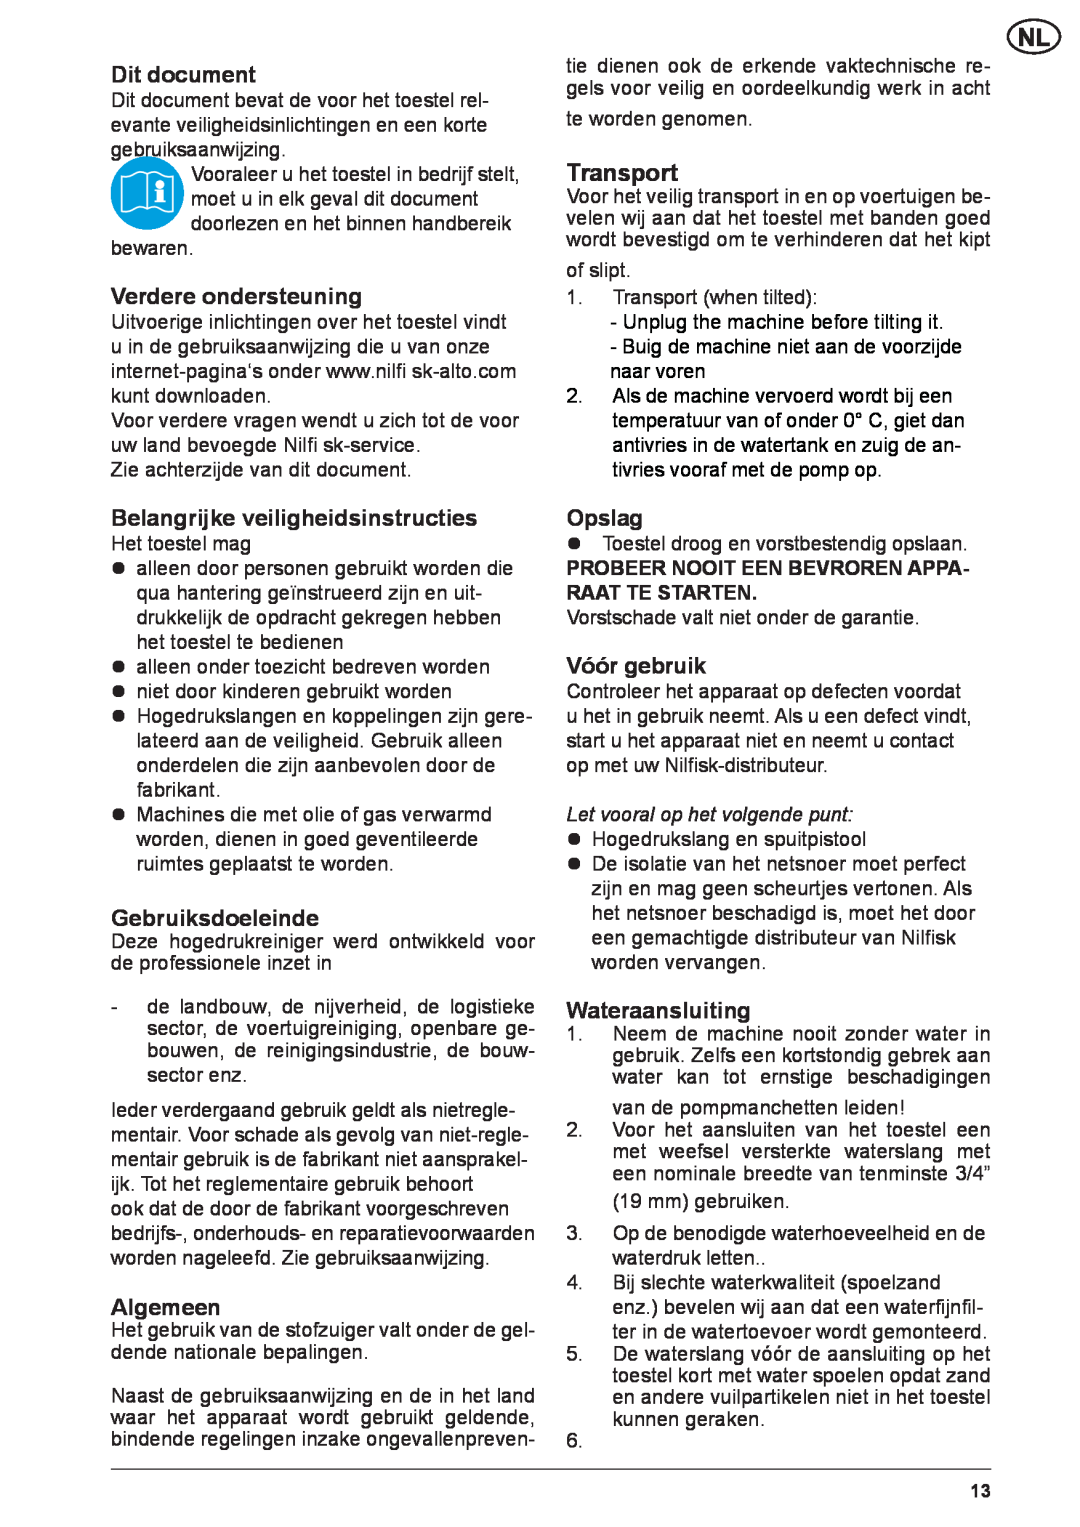 Nilfisk-ALTO NEPTUNE 2 Dit document, Verdere ondersteuning, Belangrijke veiligheidsinstructies, Gebruiksdoeleinde, Opslag 